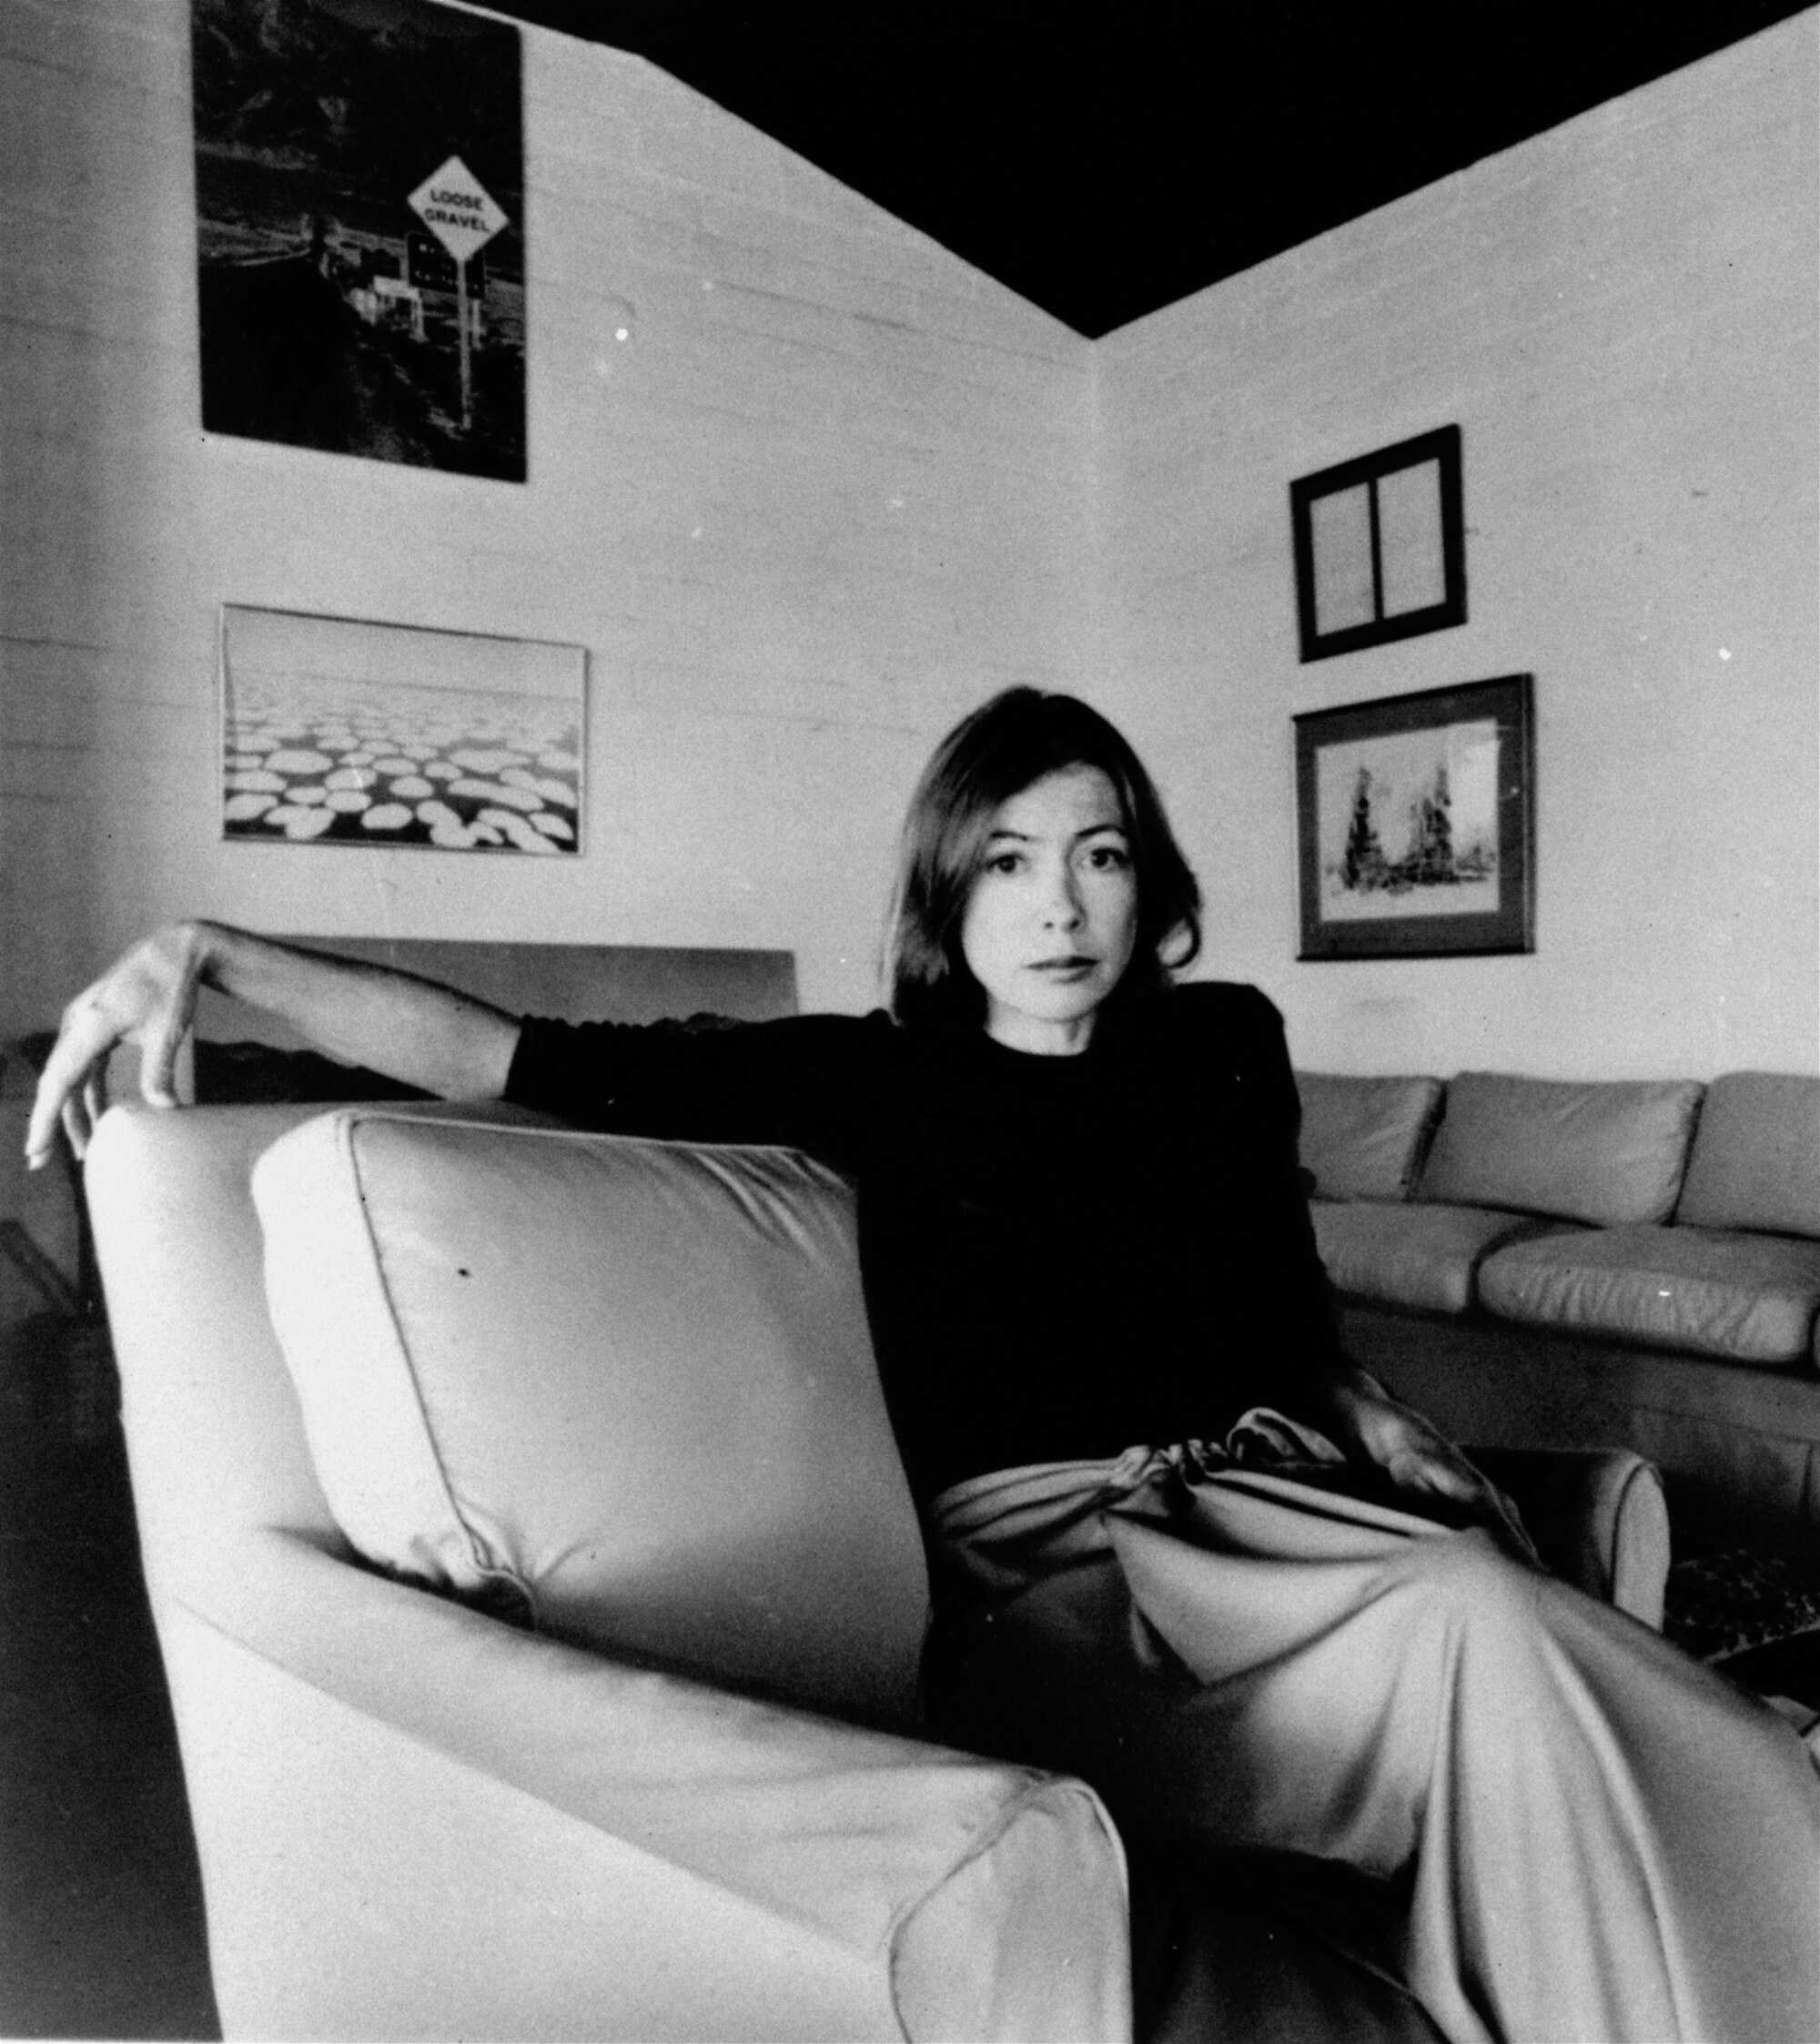 جوآن دیدیون در سال 1977 روی صندلی راحتی نشست.